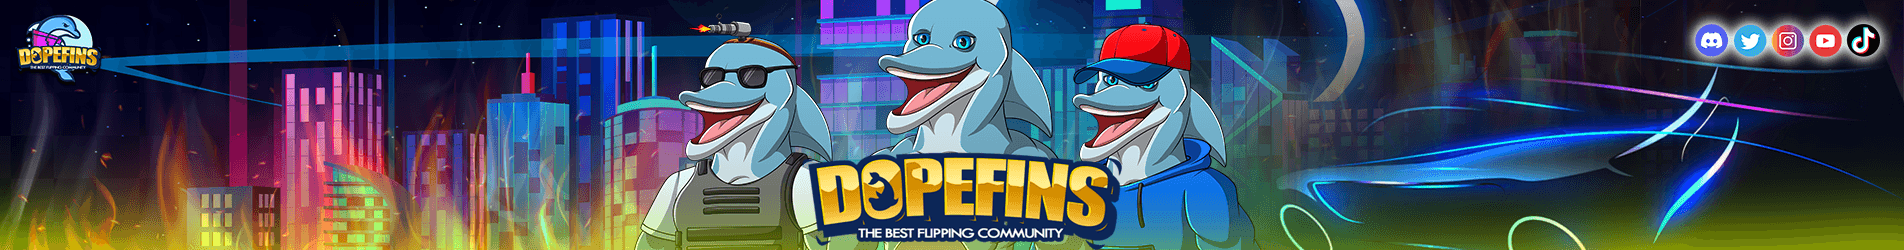 Dopefins bannière